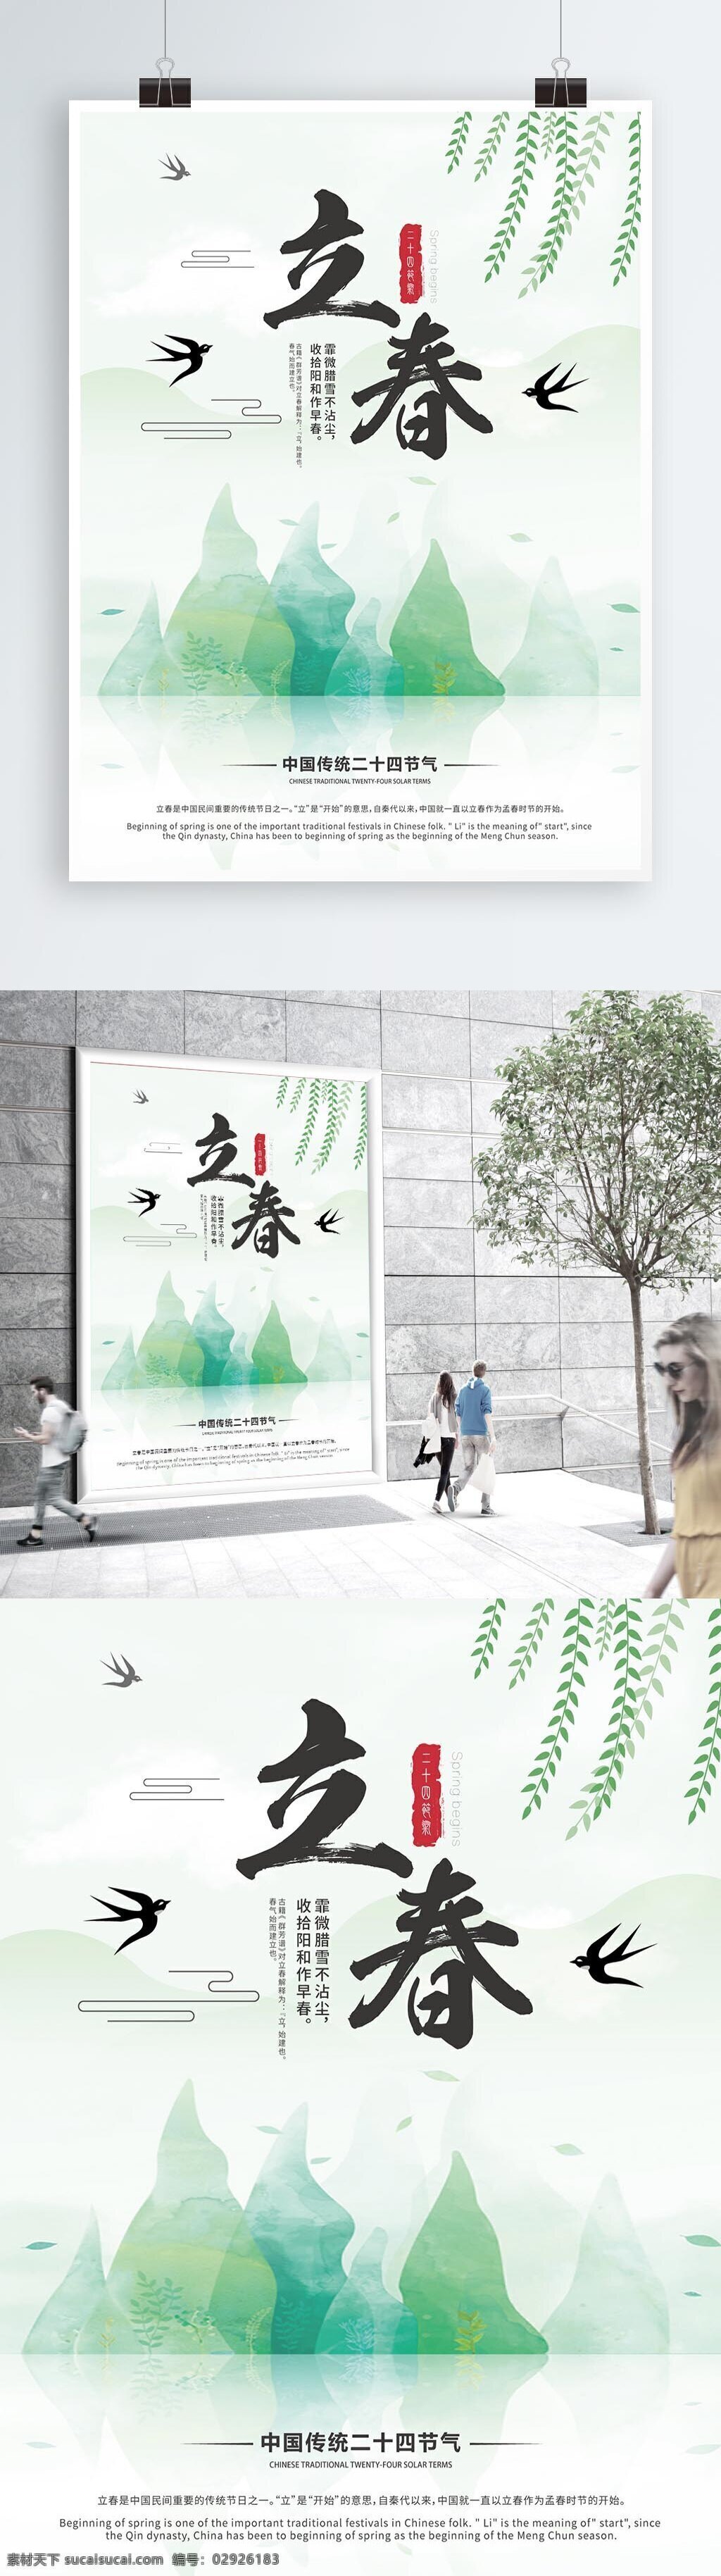 二十四节气 立春 宣传海报 柳枝 绿色 燕子 意境 中国传统节日